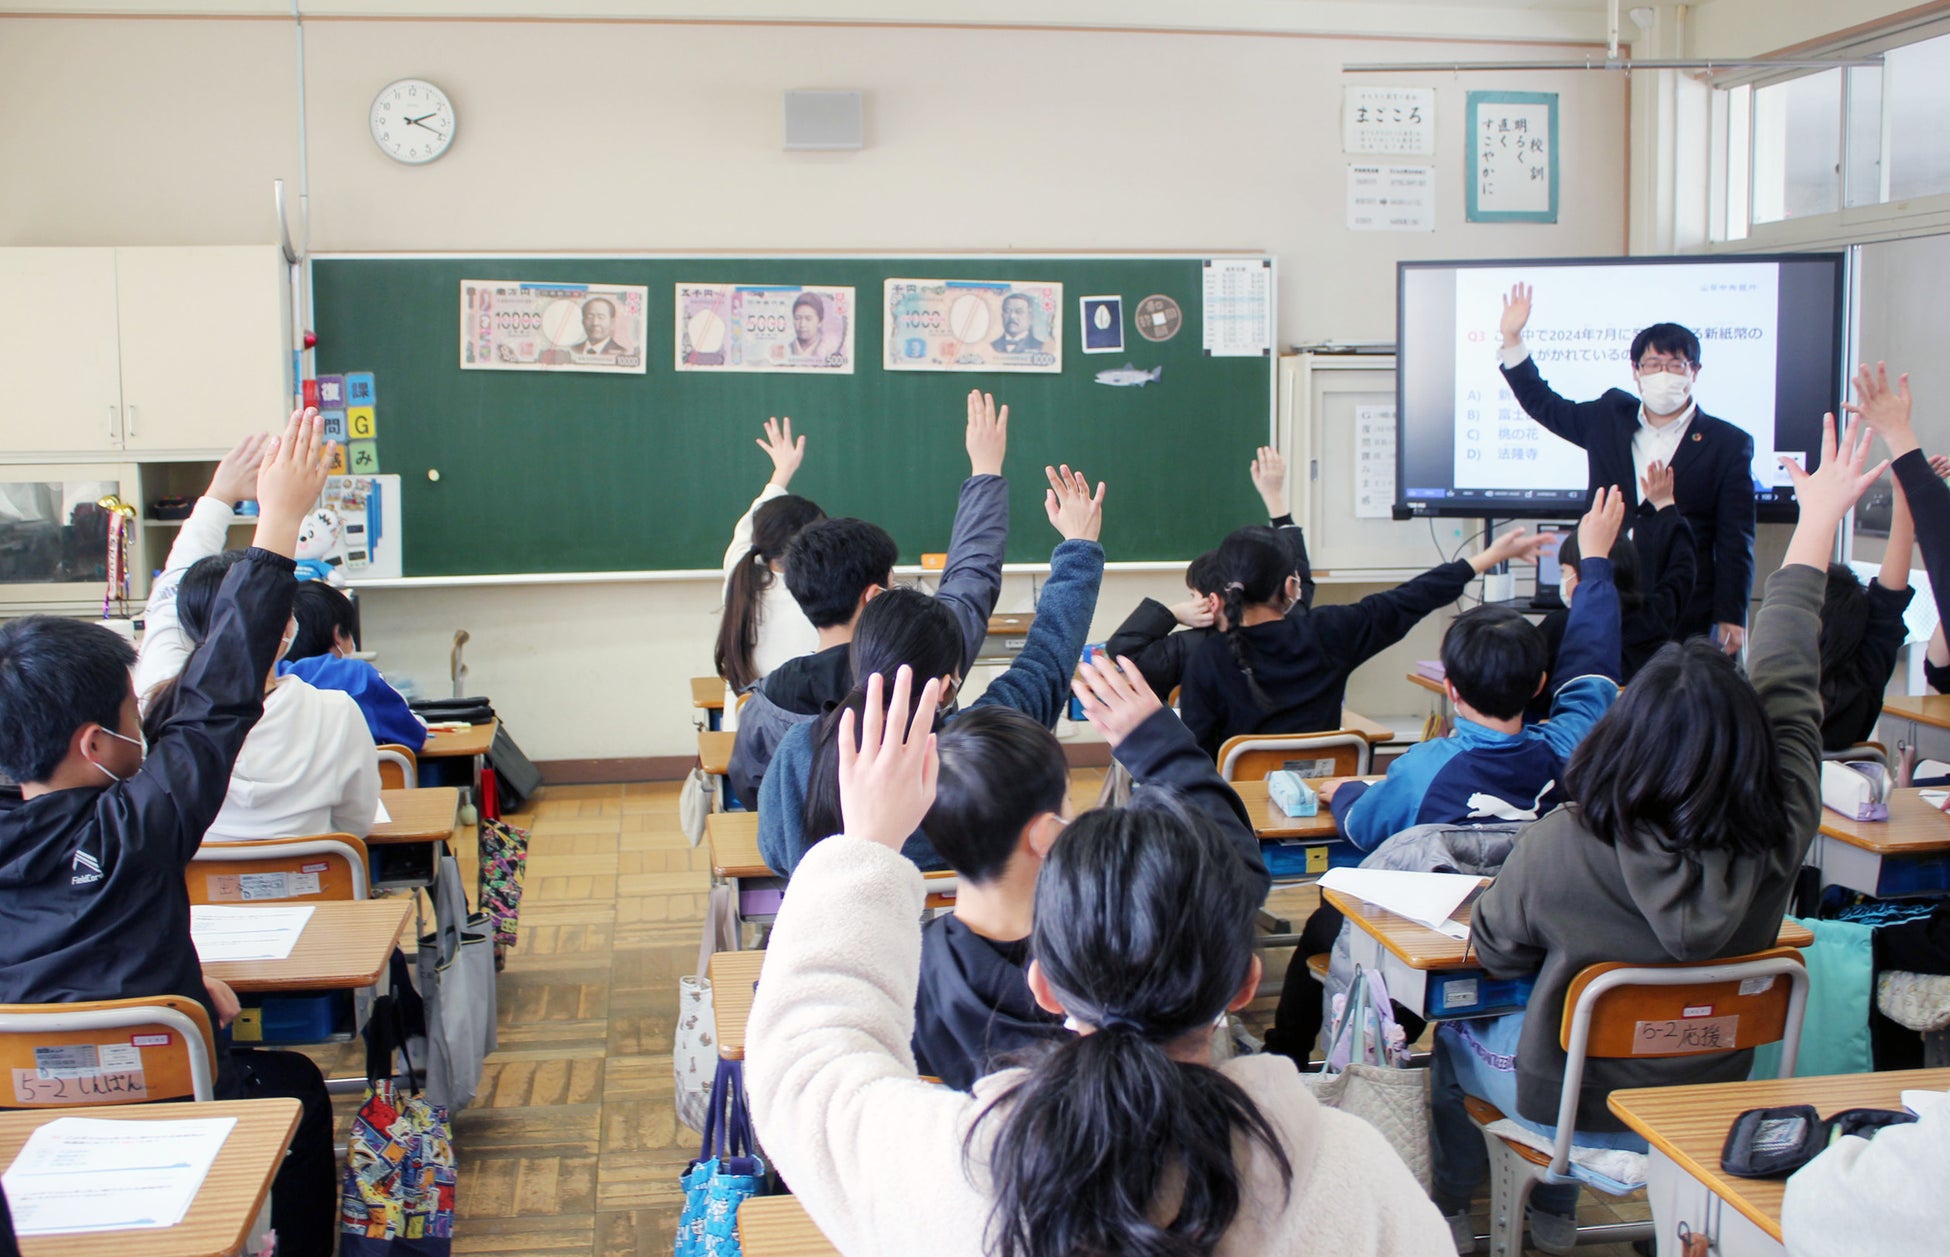 中央市立田富小学校においてマネースクール「キャッシュレスと新紙幣クイズ」を実施しました